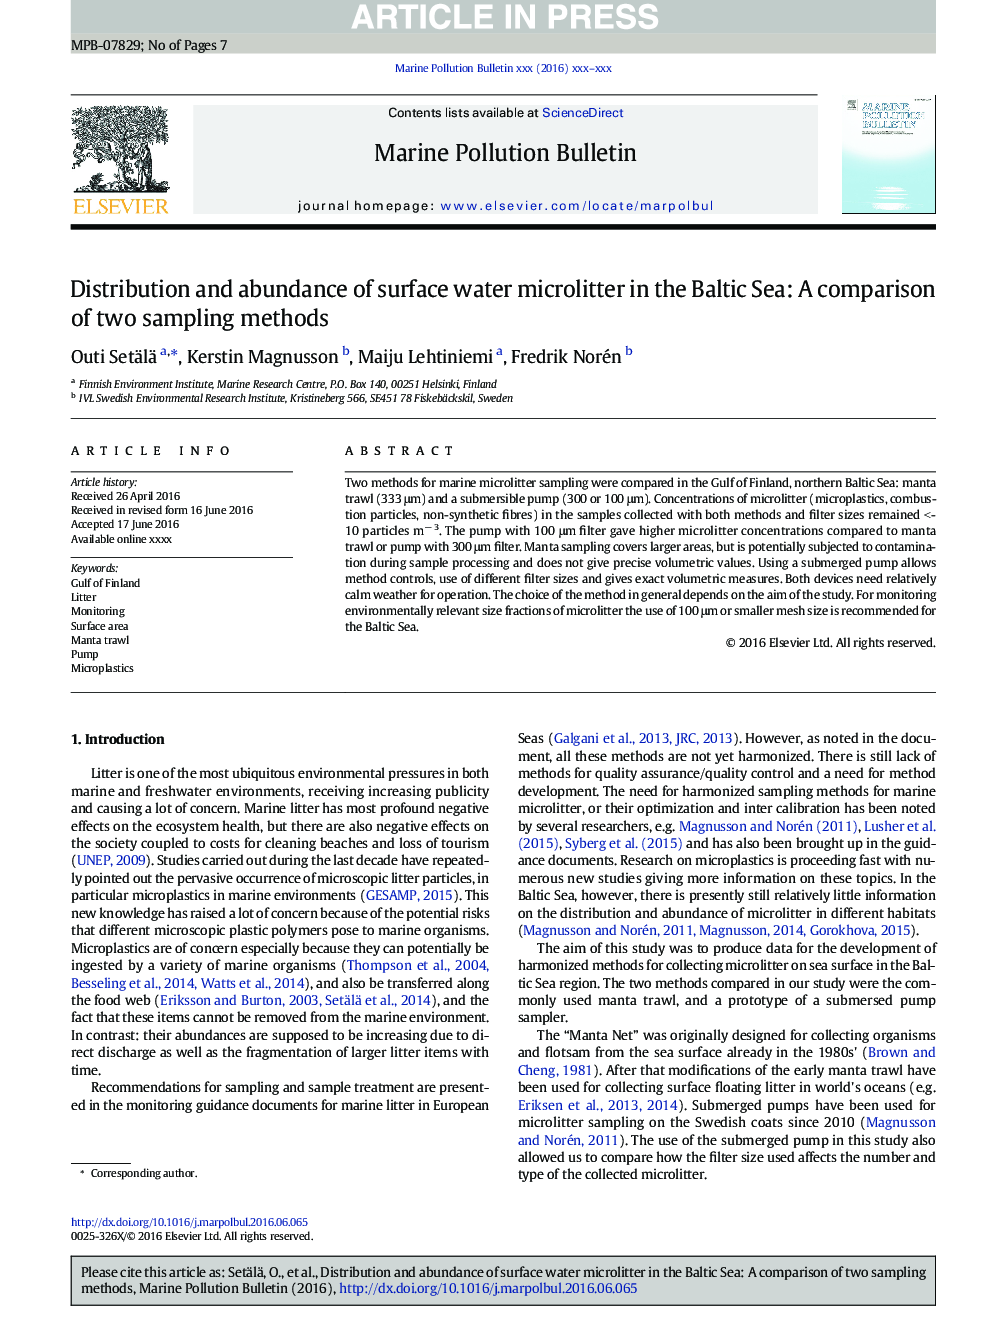 توزیع و فراوانی میکرولیتر آب سطحی در دریای بالتیک: مقایسه دو روش نمونه گیری 